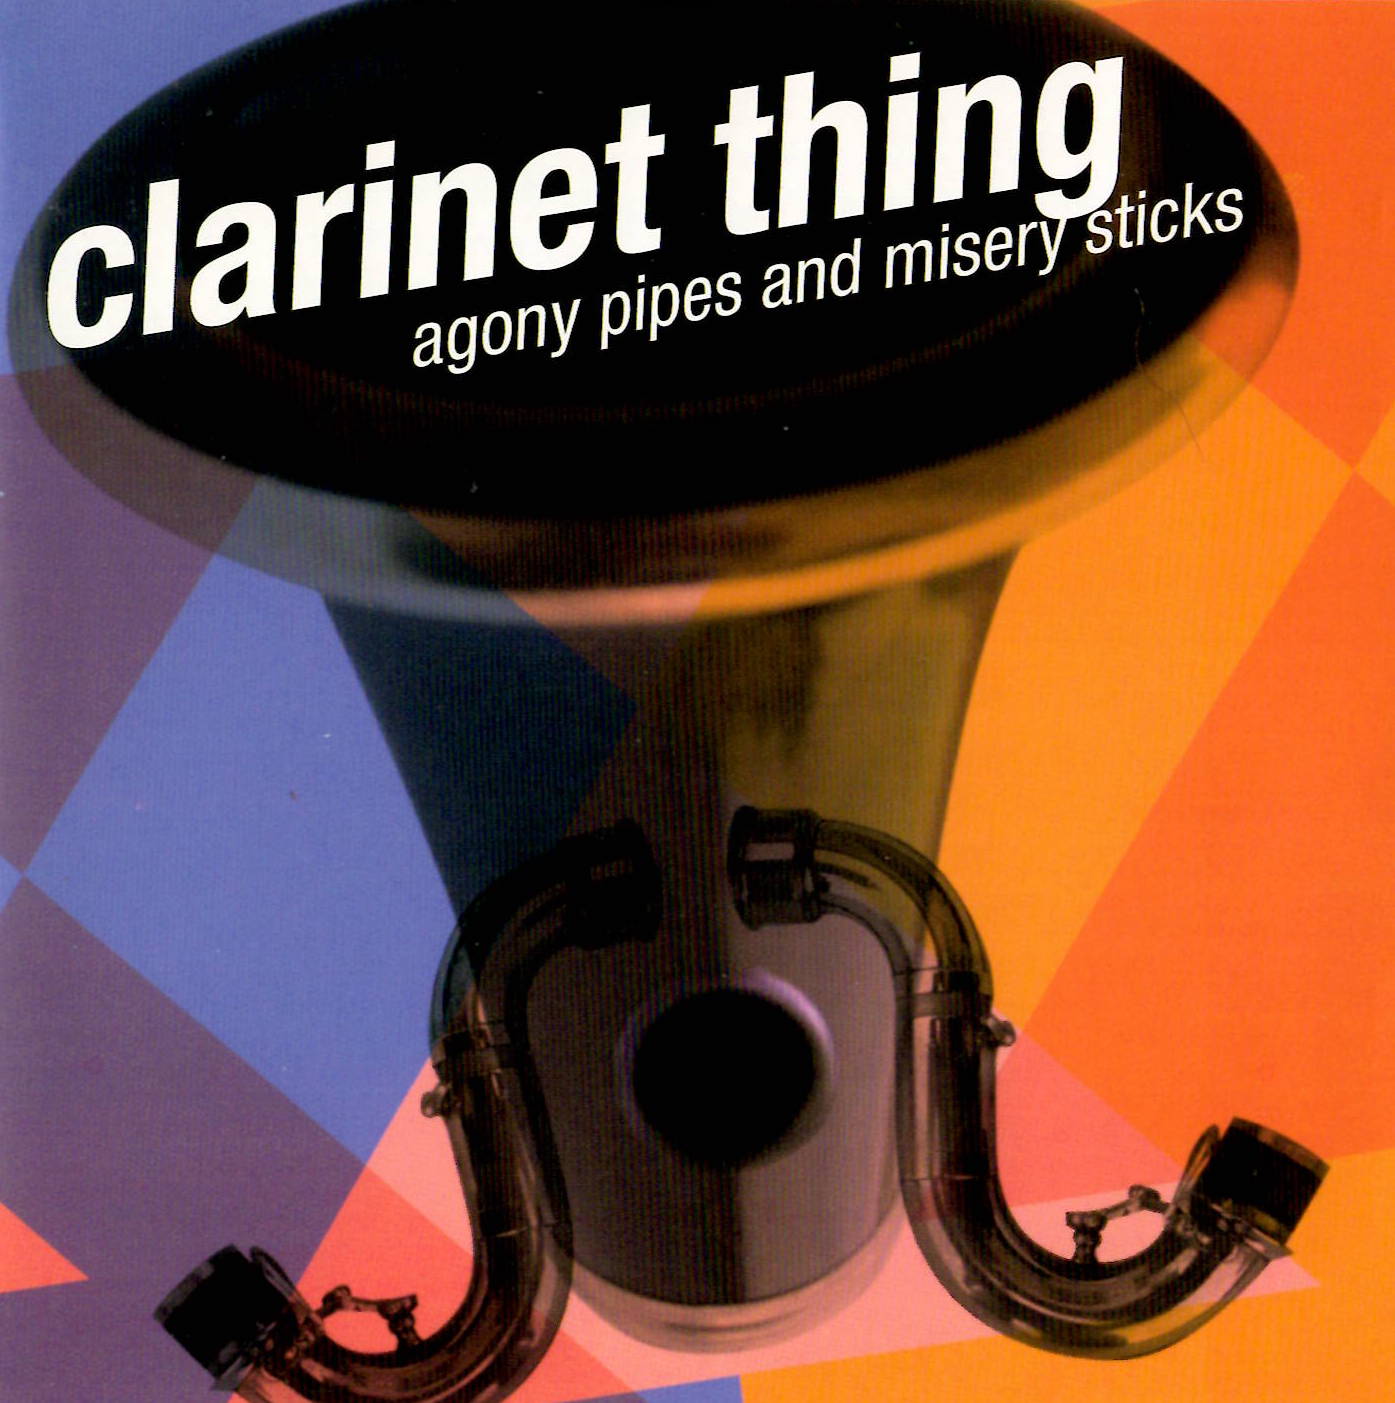 Clarinet Thing